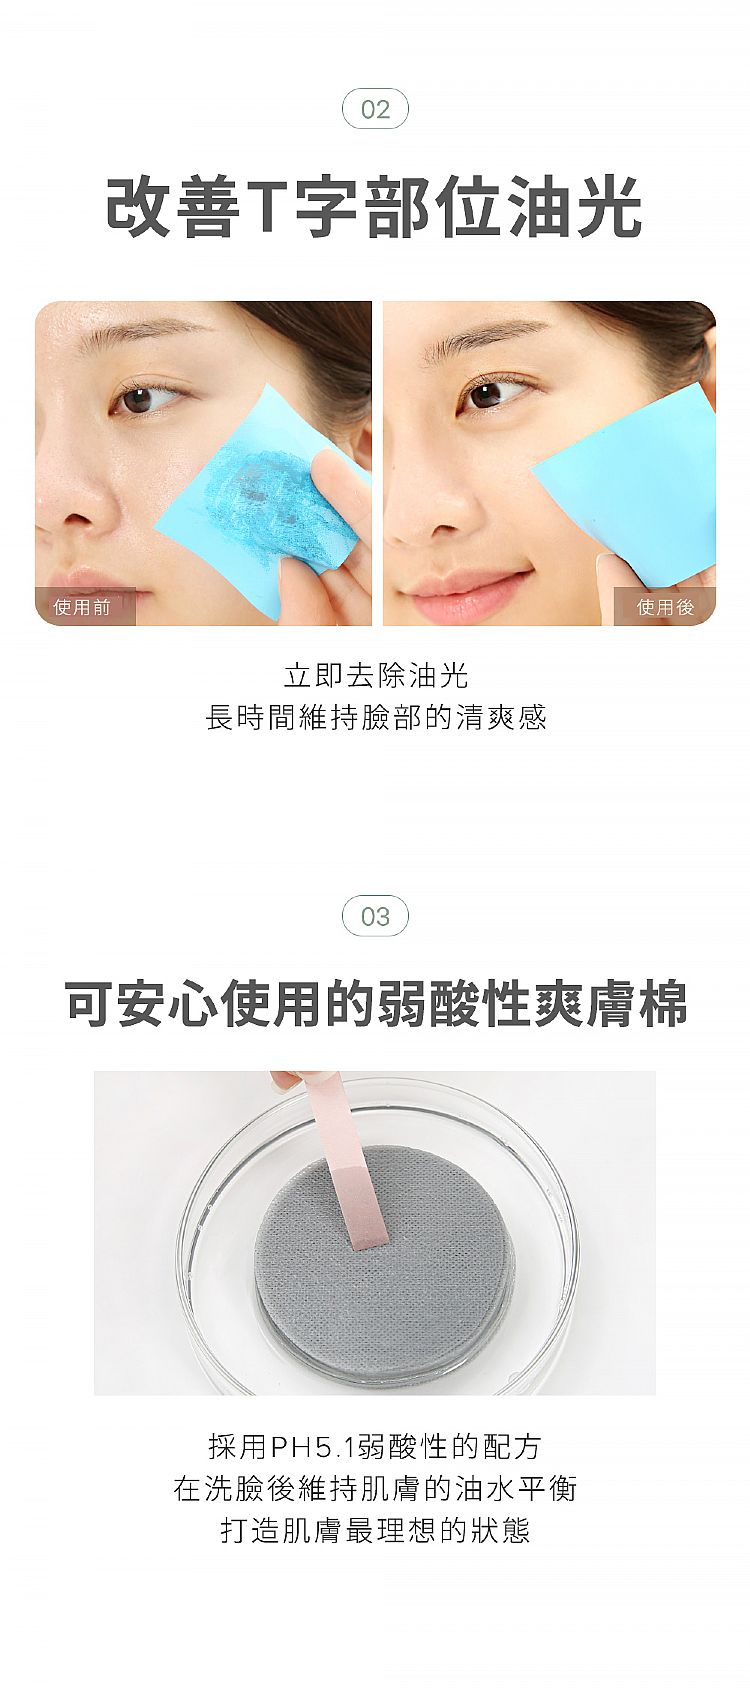 韓國 臉部保養 化妝水 臉部保養 豐潤 臉部保養